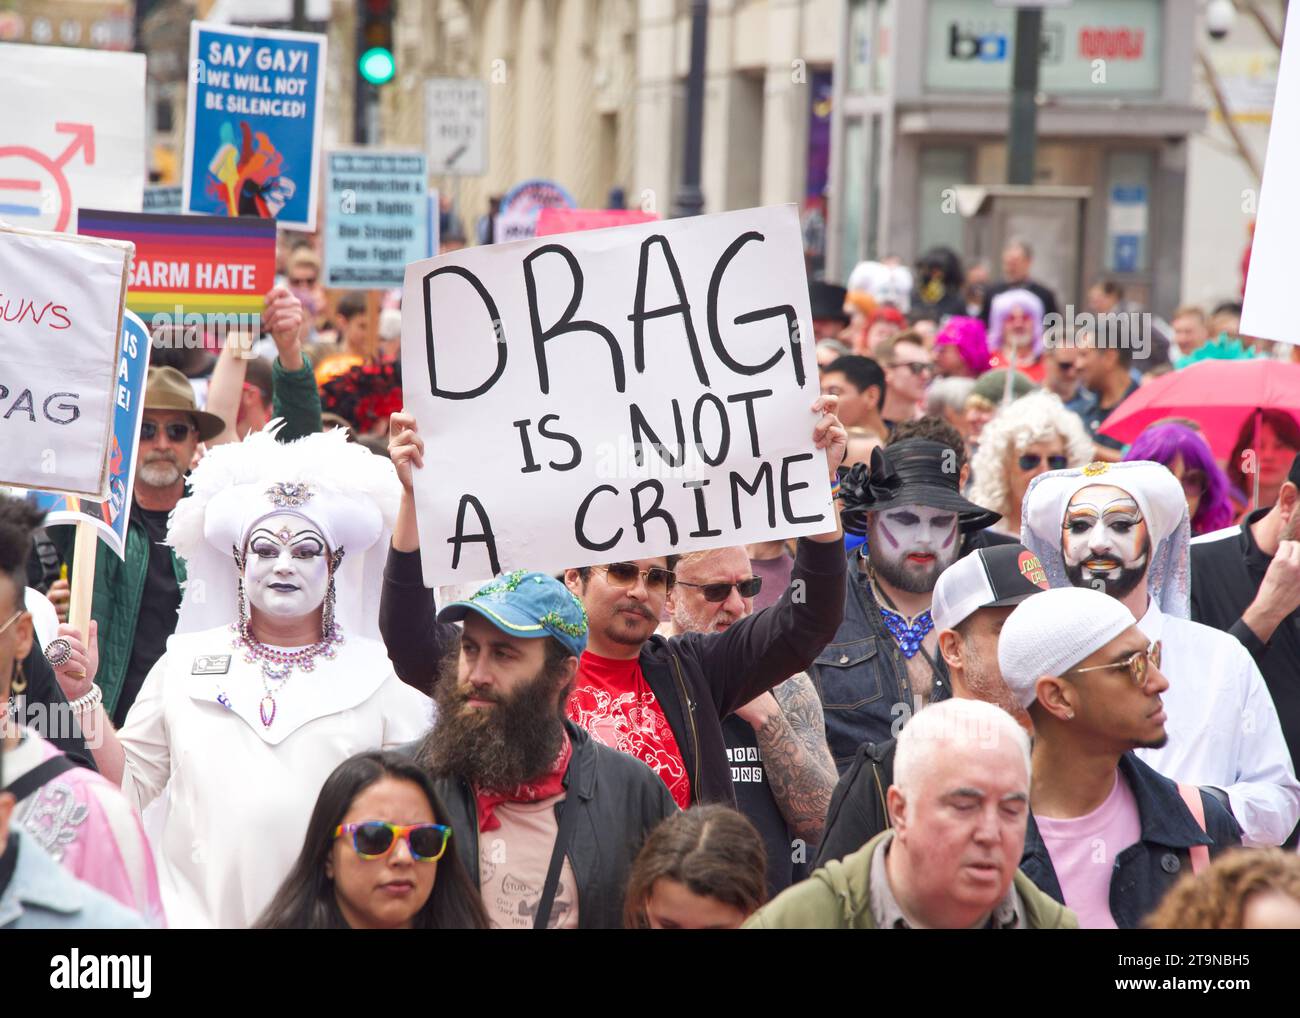 San Francisco, CA - 8 avril 2023 : les participants à la manifestation Drag Up Fight Back défilent du Civic Center à Union Square. Maintien des affiches. Banque D'Images